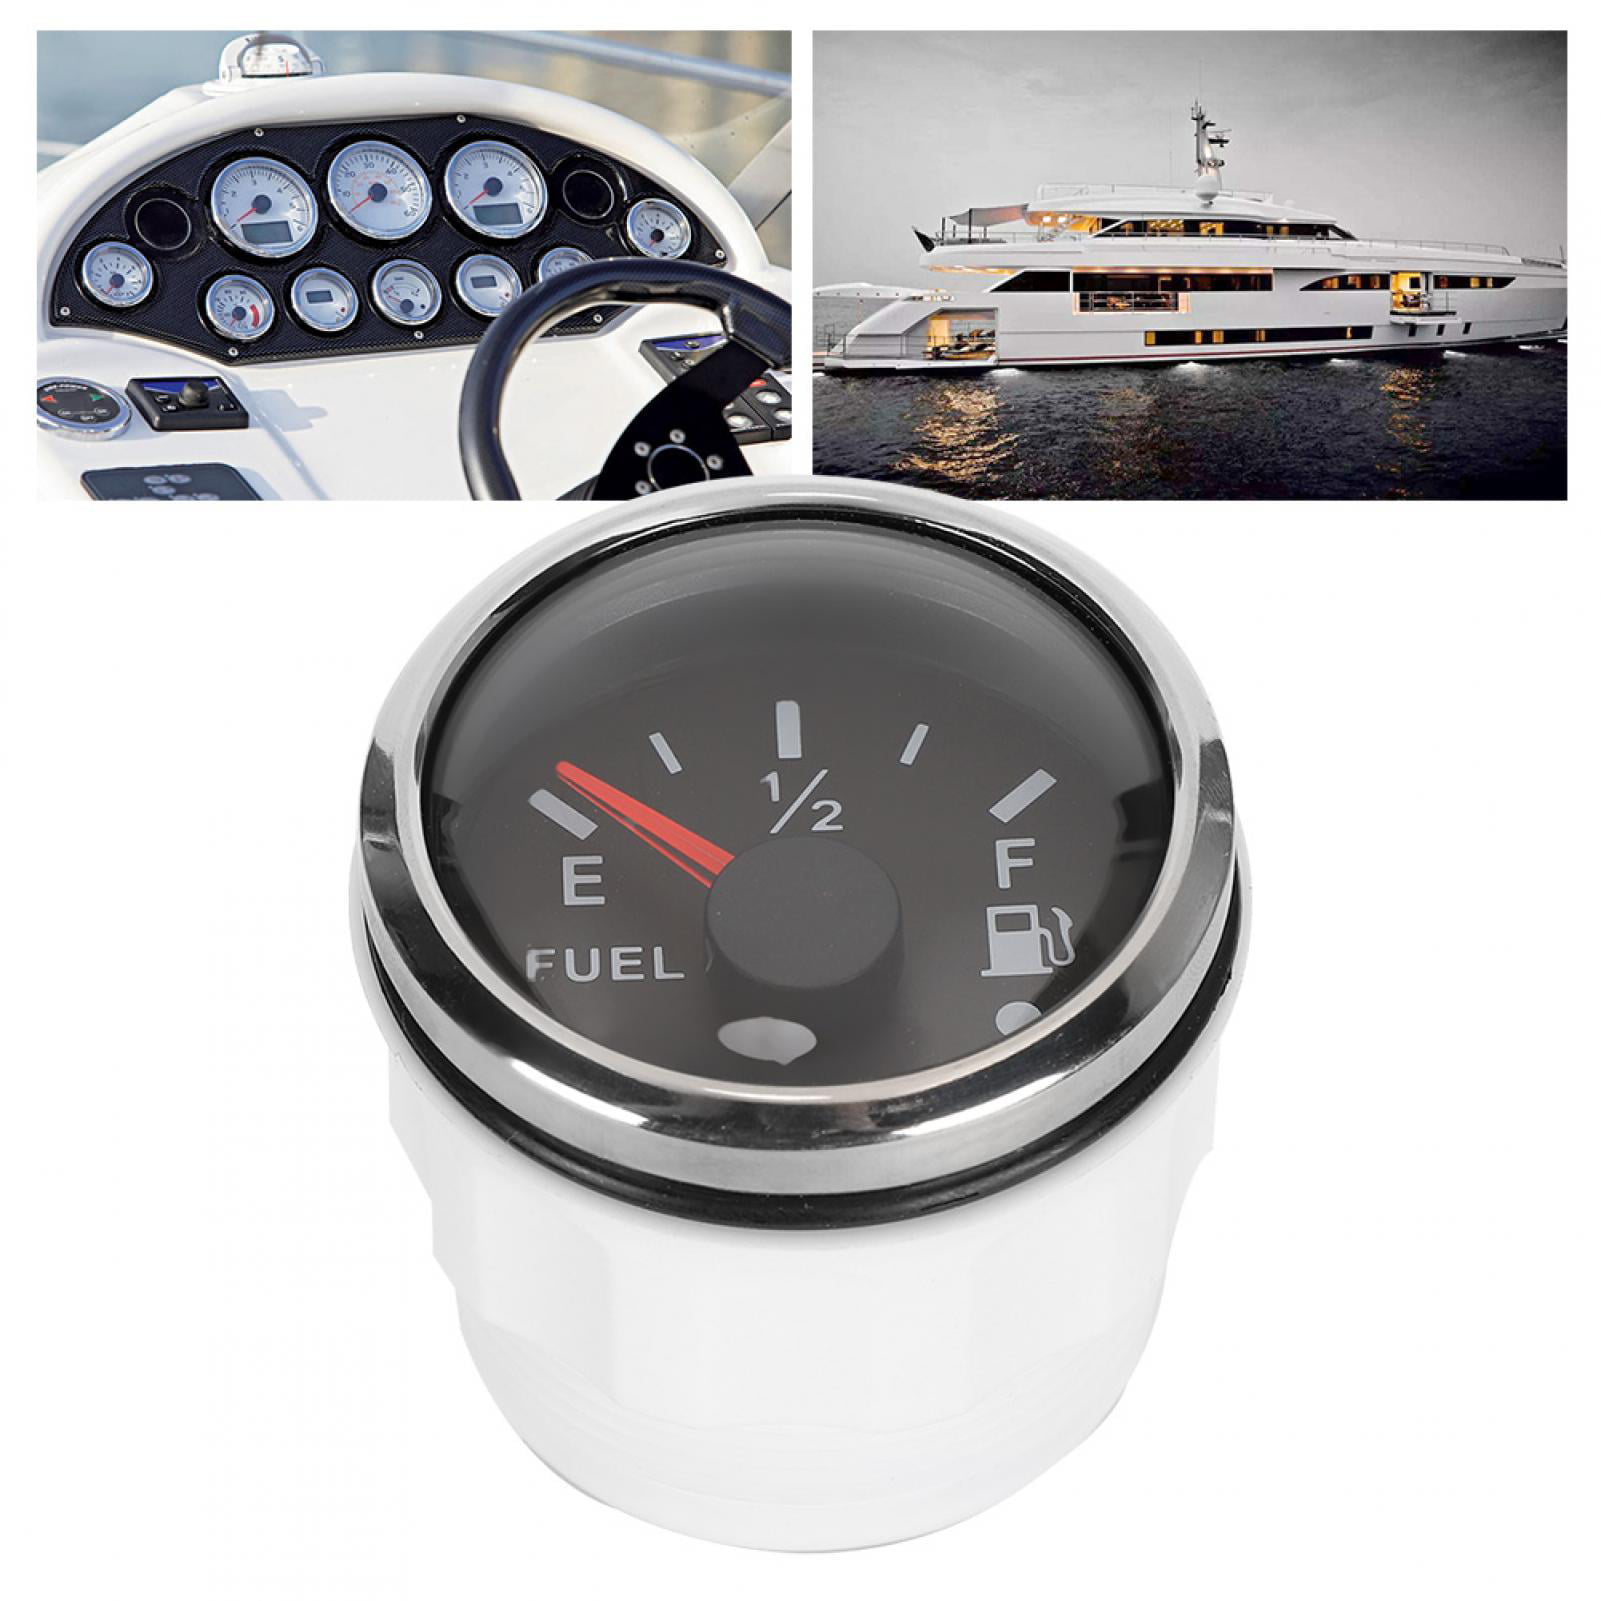 Fuel Level Gauge American Standards Black 2in Fuel Level Meter LED Digital Display Smart Red Light Alarm for Marine Boat Car